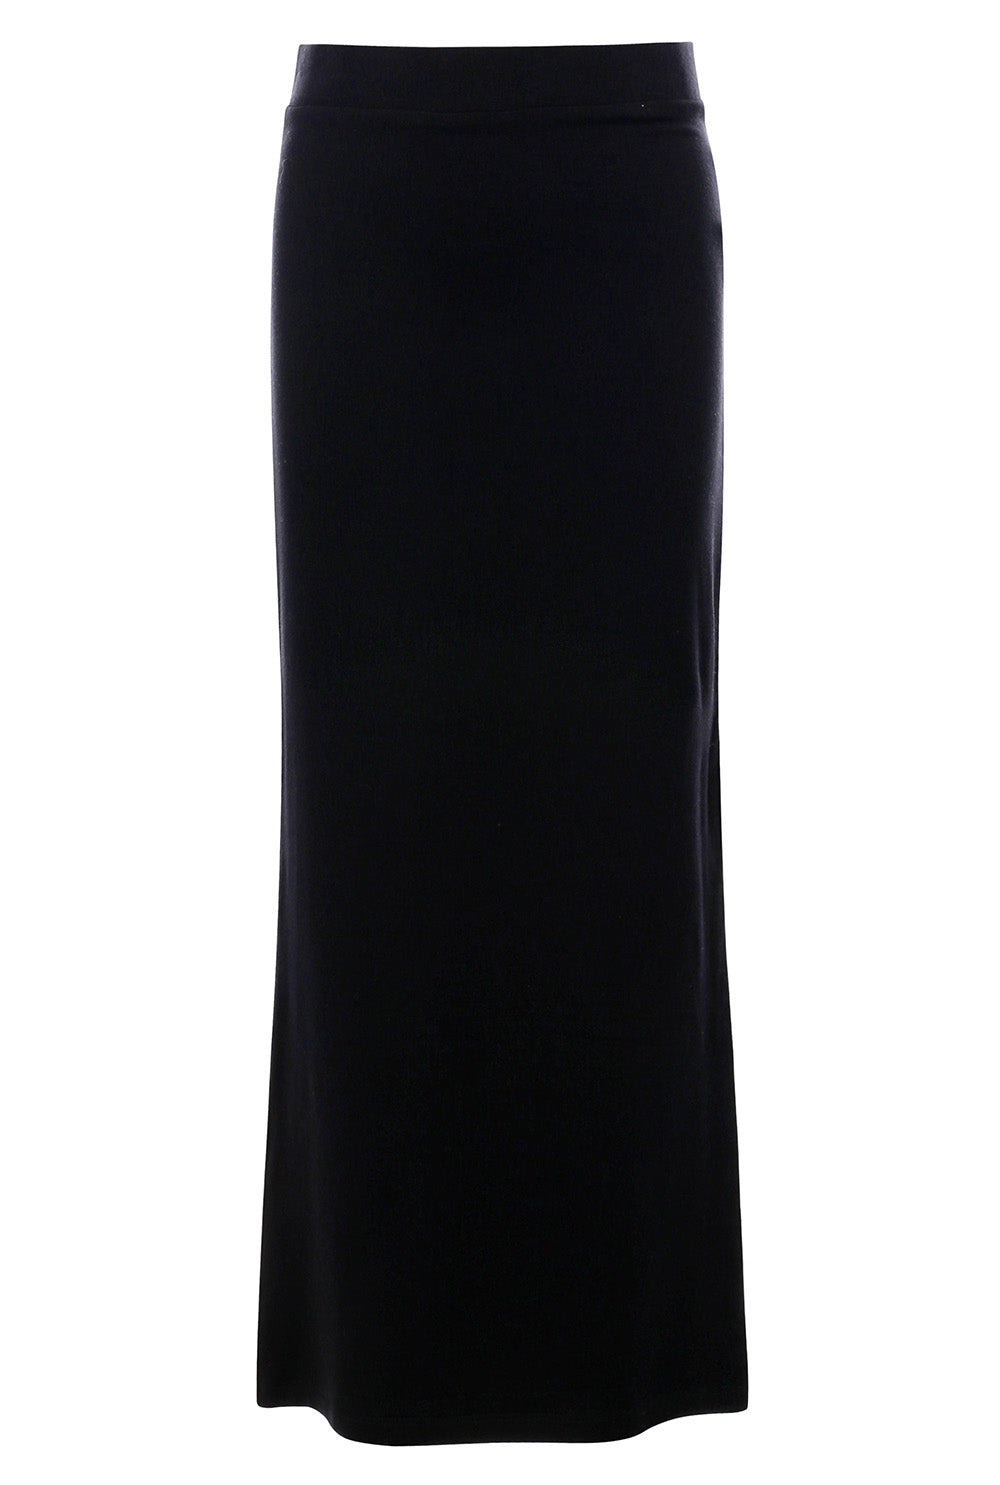 Meisjes Long Skirt van LOOXS 10sixteen in de kleur Black in maat 176.